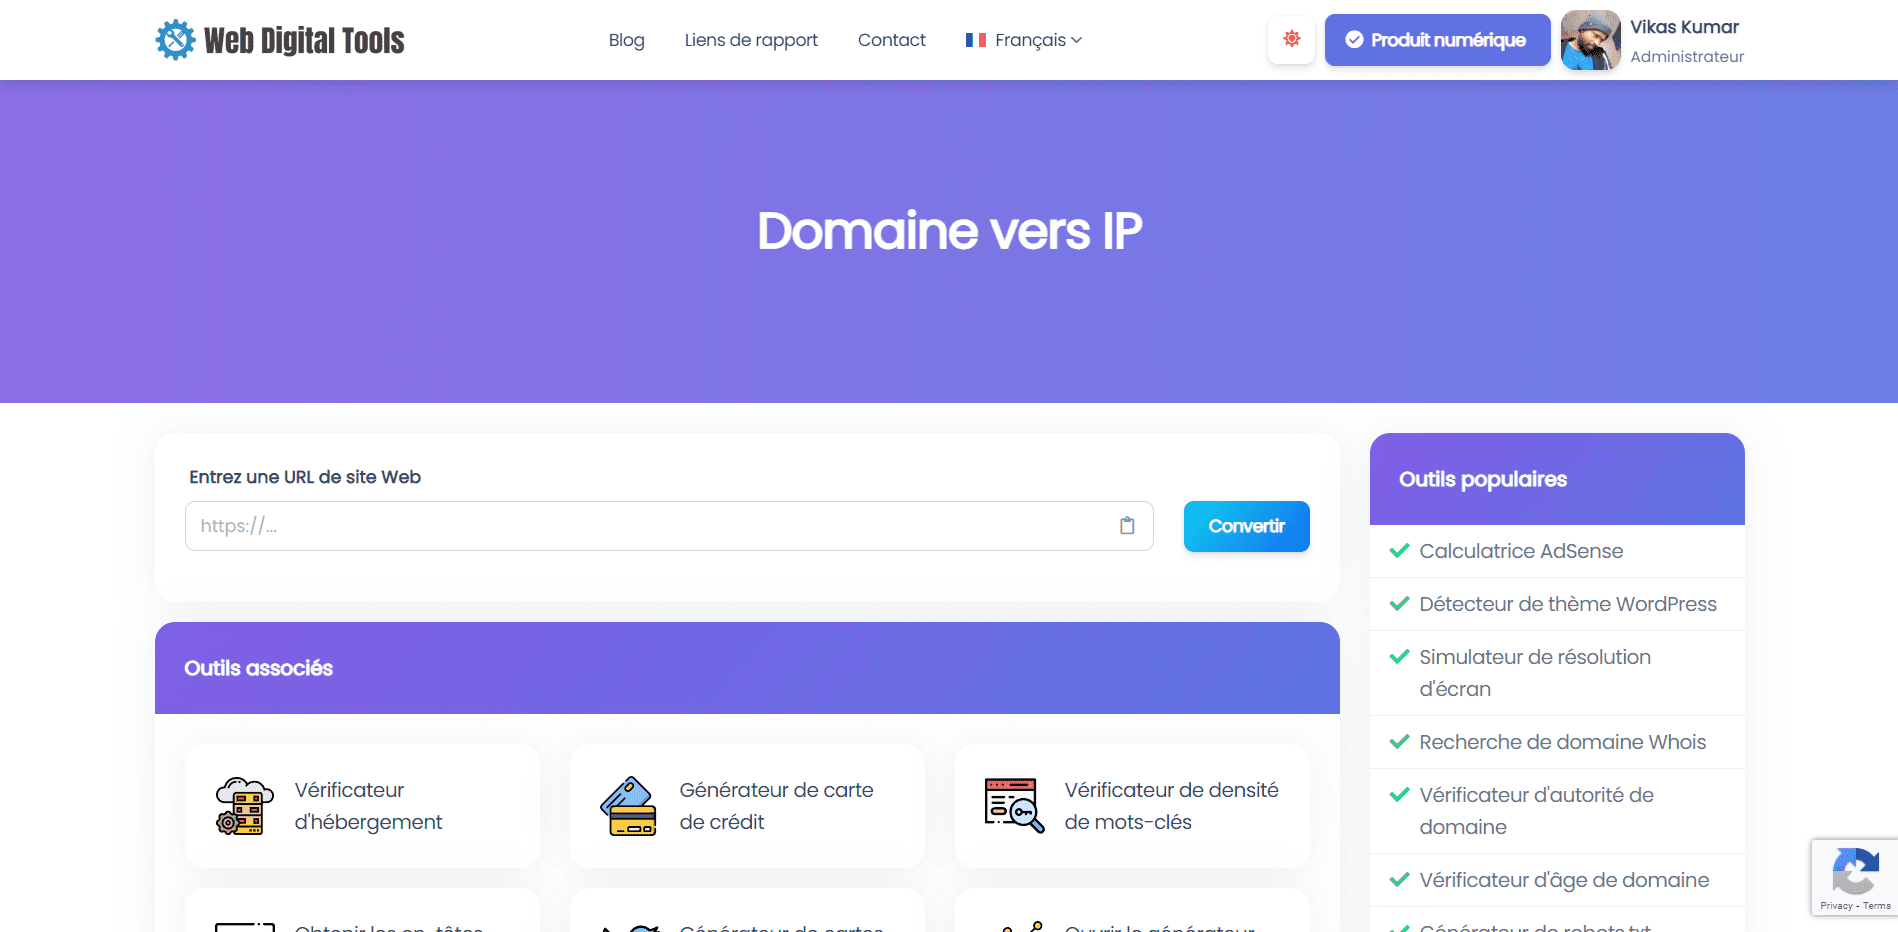 Domaine vers IP